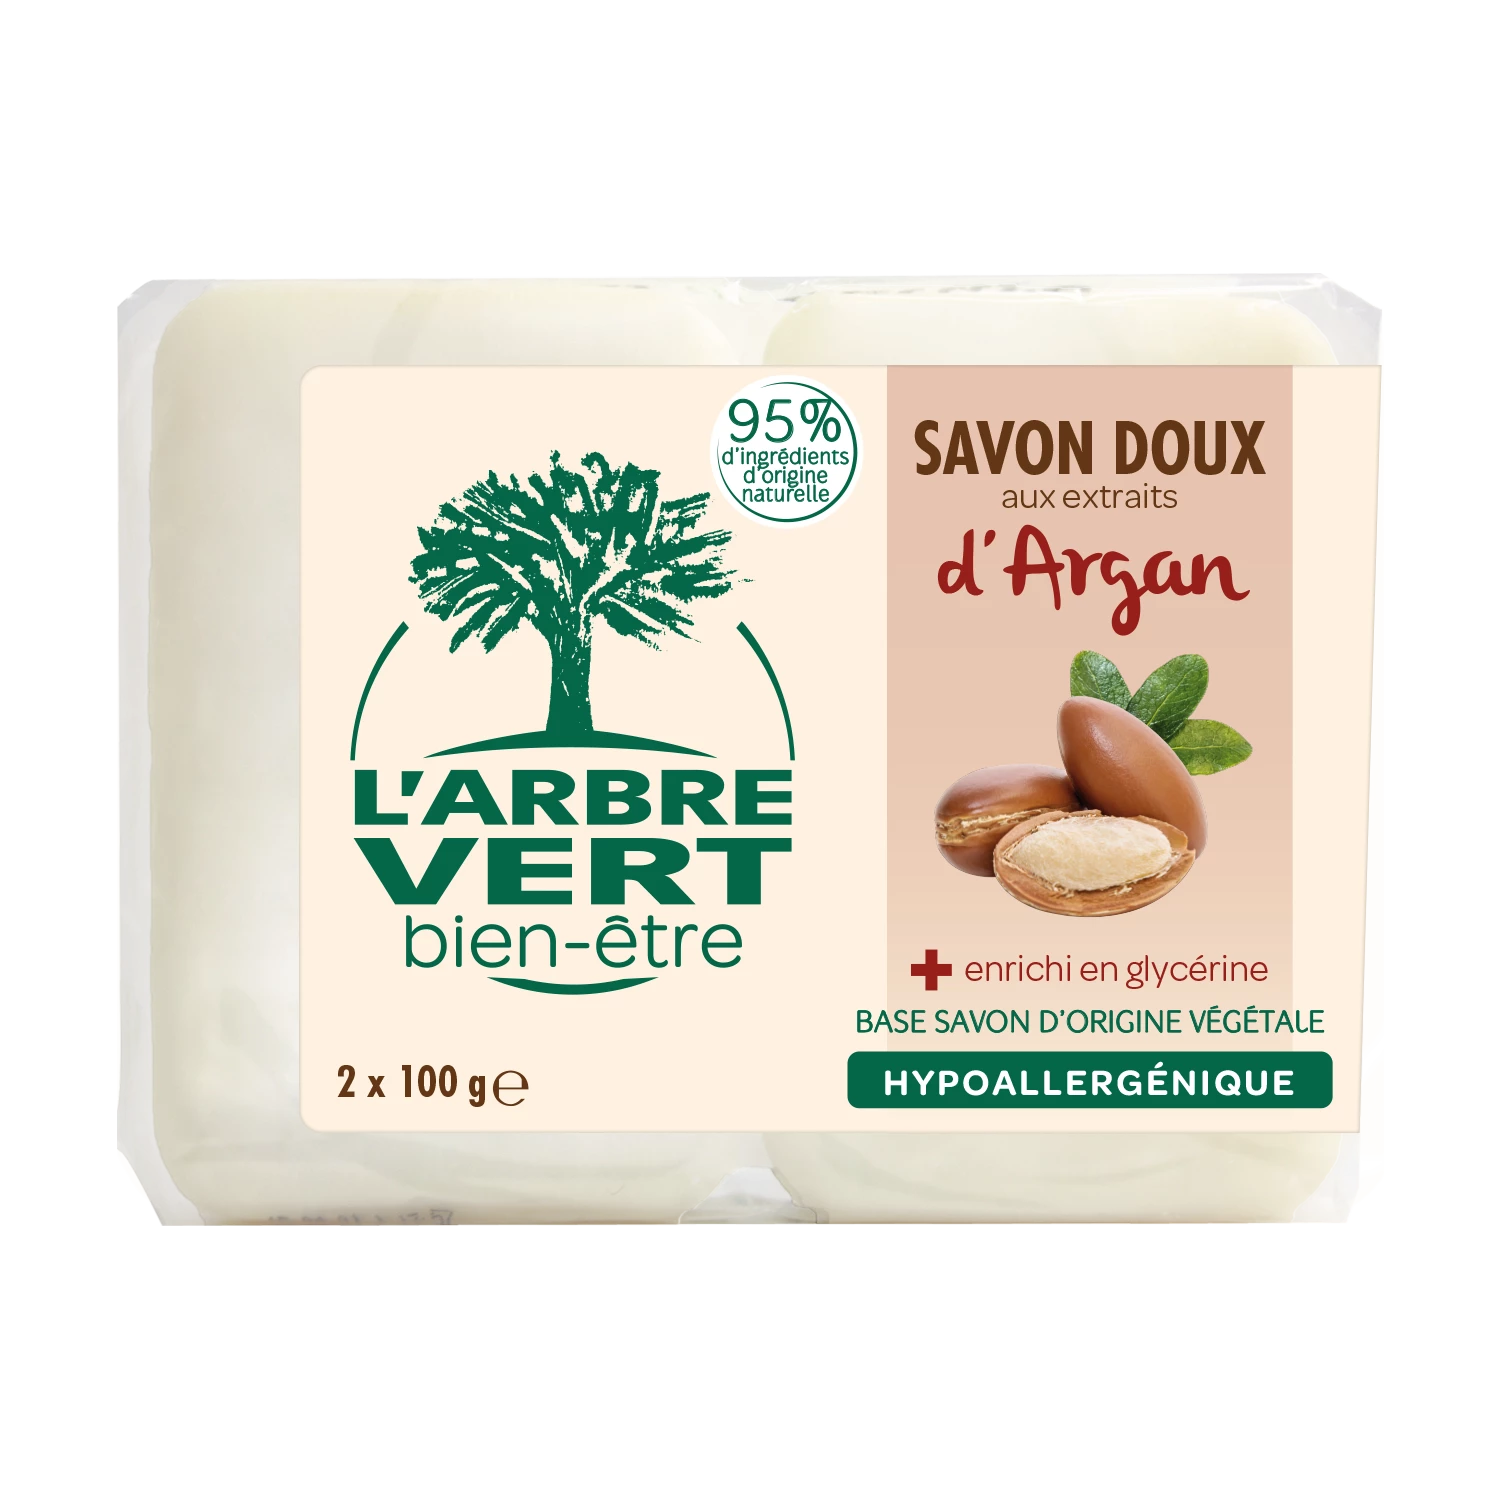 温和固体摩洛哥坚果皂 2 x 100g - L'ARBRE VERT